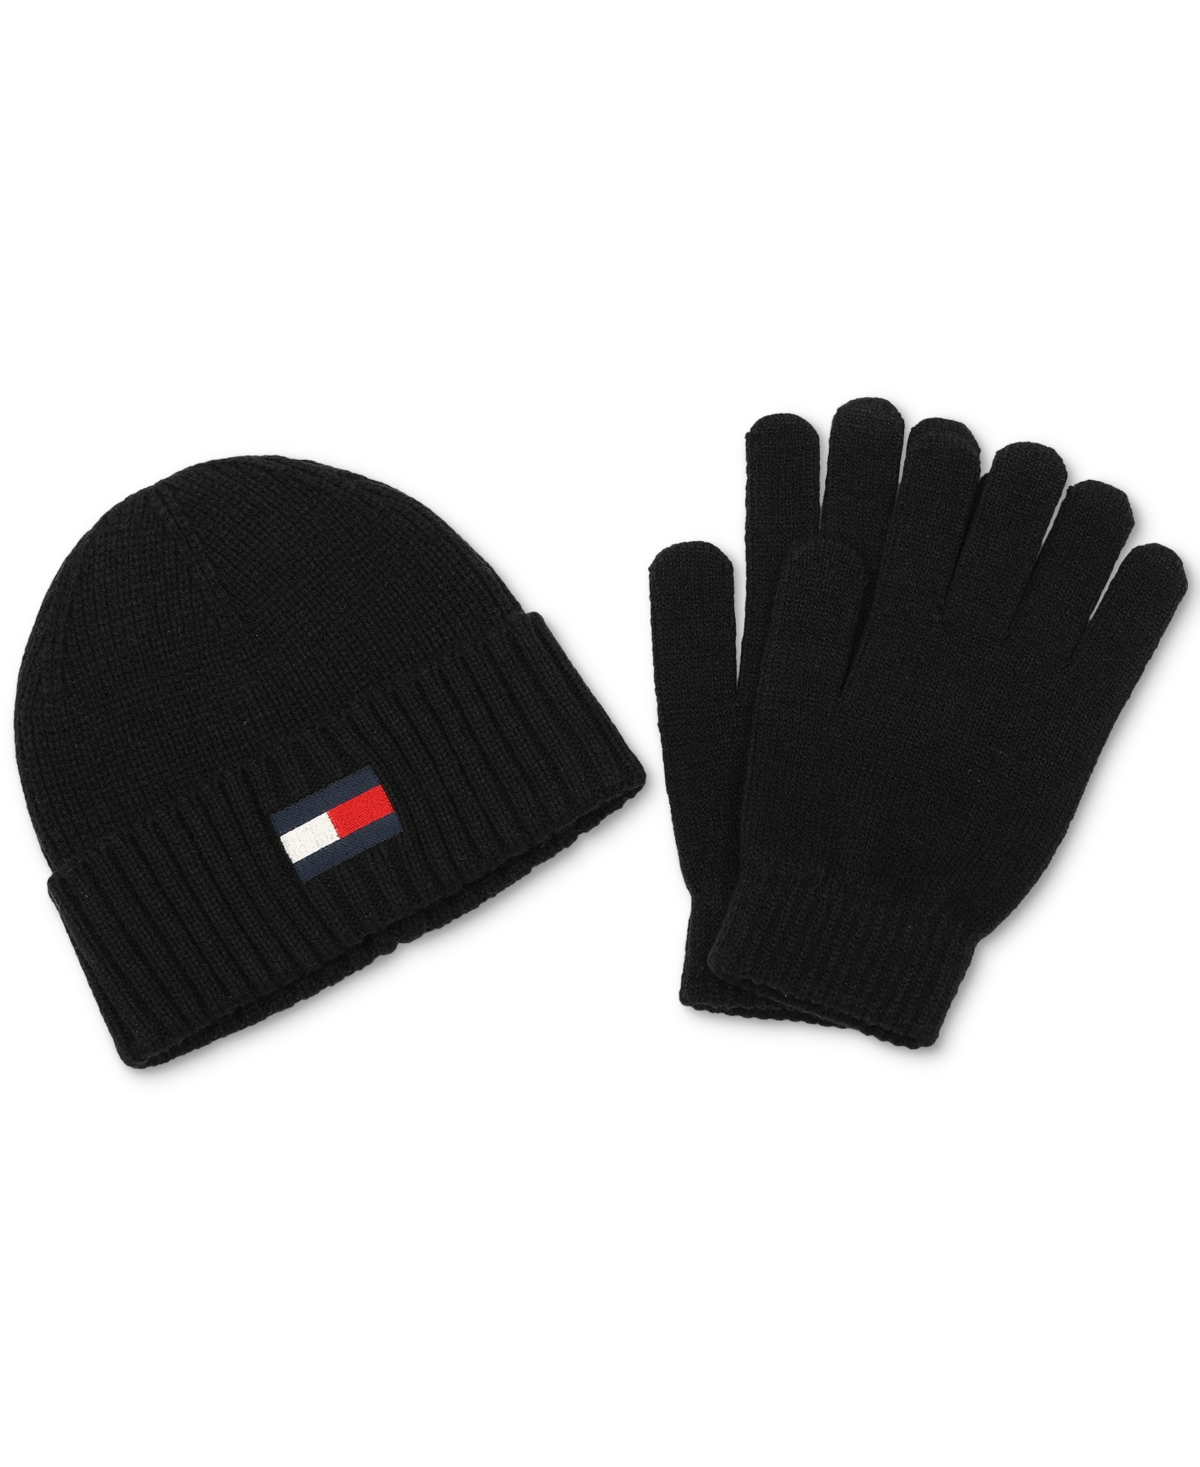 Men's Embroidered Logo Beanie & Gloves Set - Black